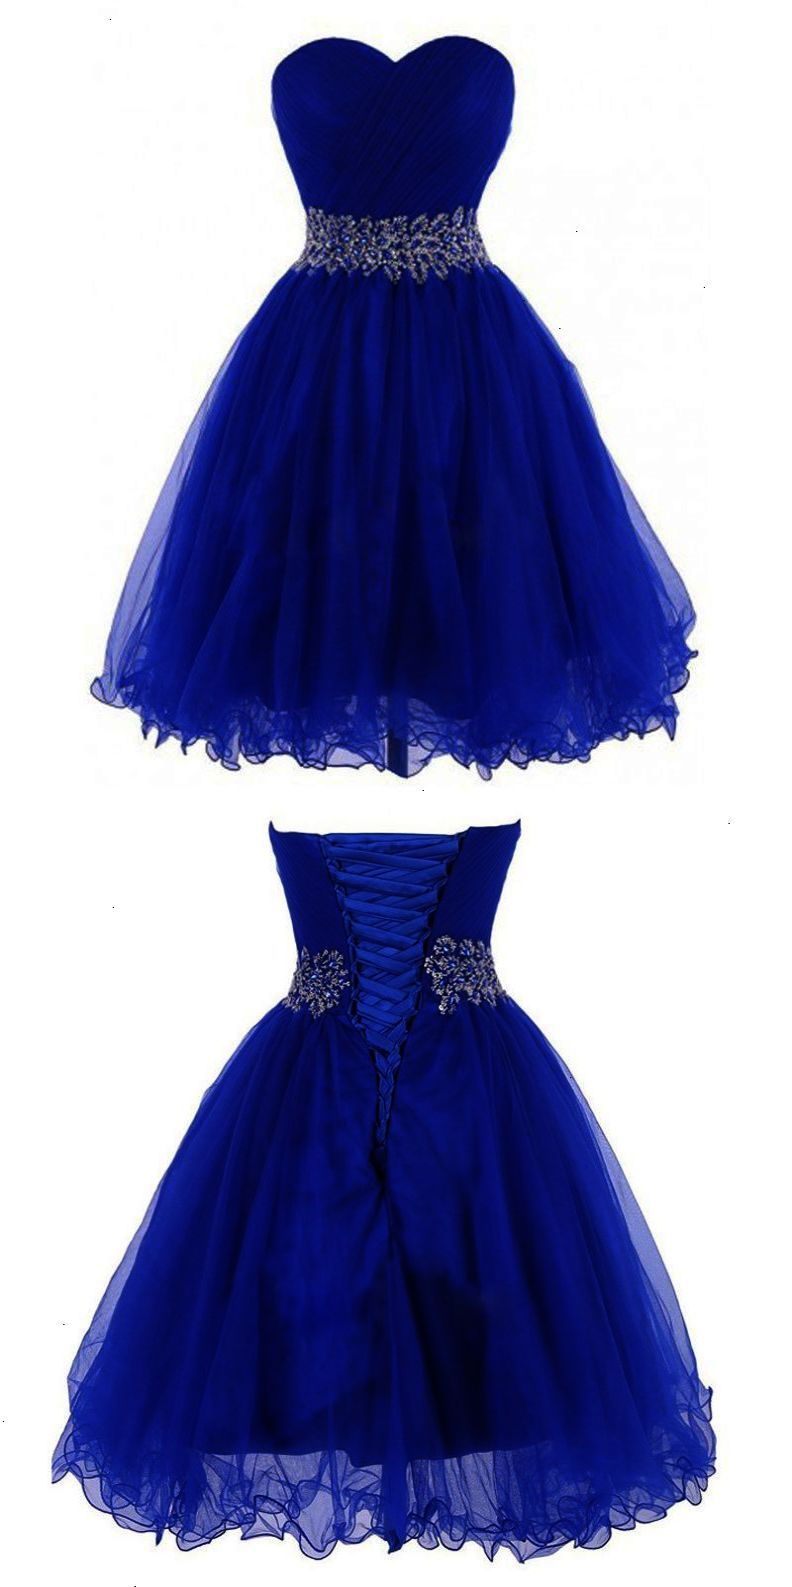 short royal blue homecoming dress